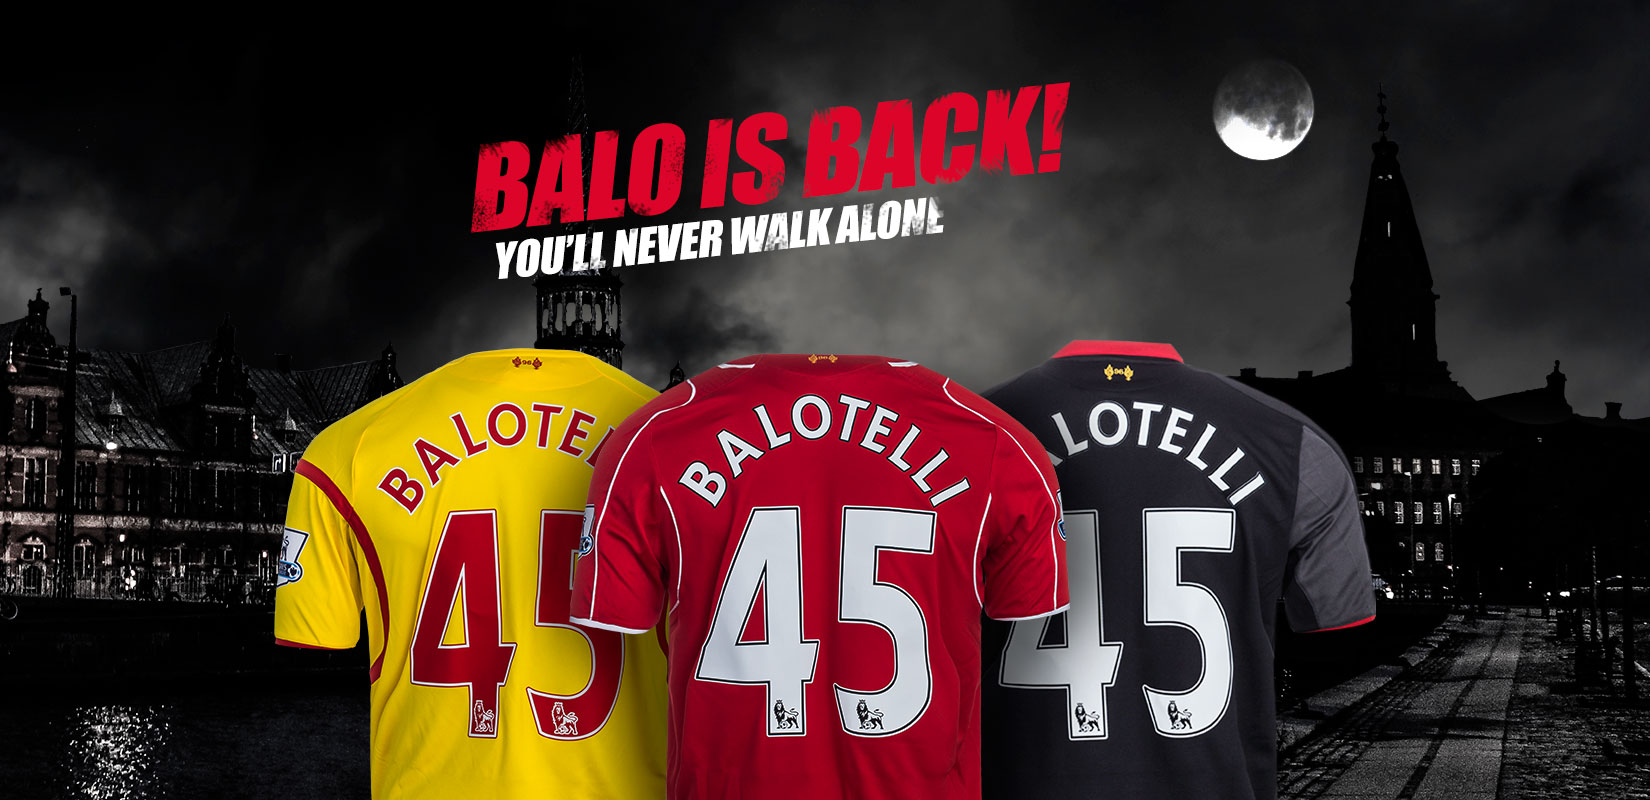 Mario-Balotellis-Liverpool-Fodboldtroeje-02-fodboldfreak